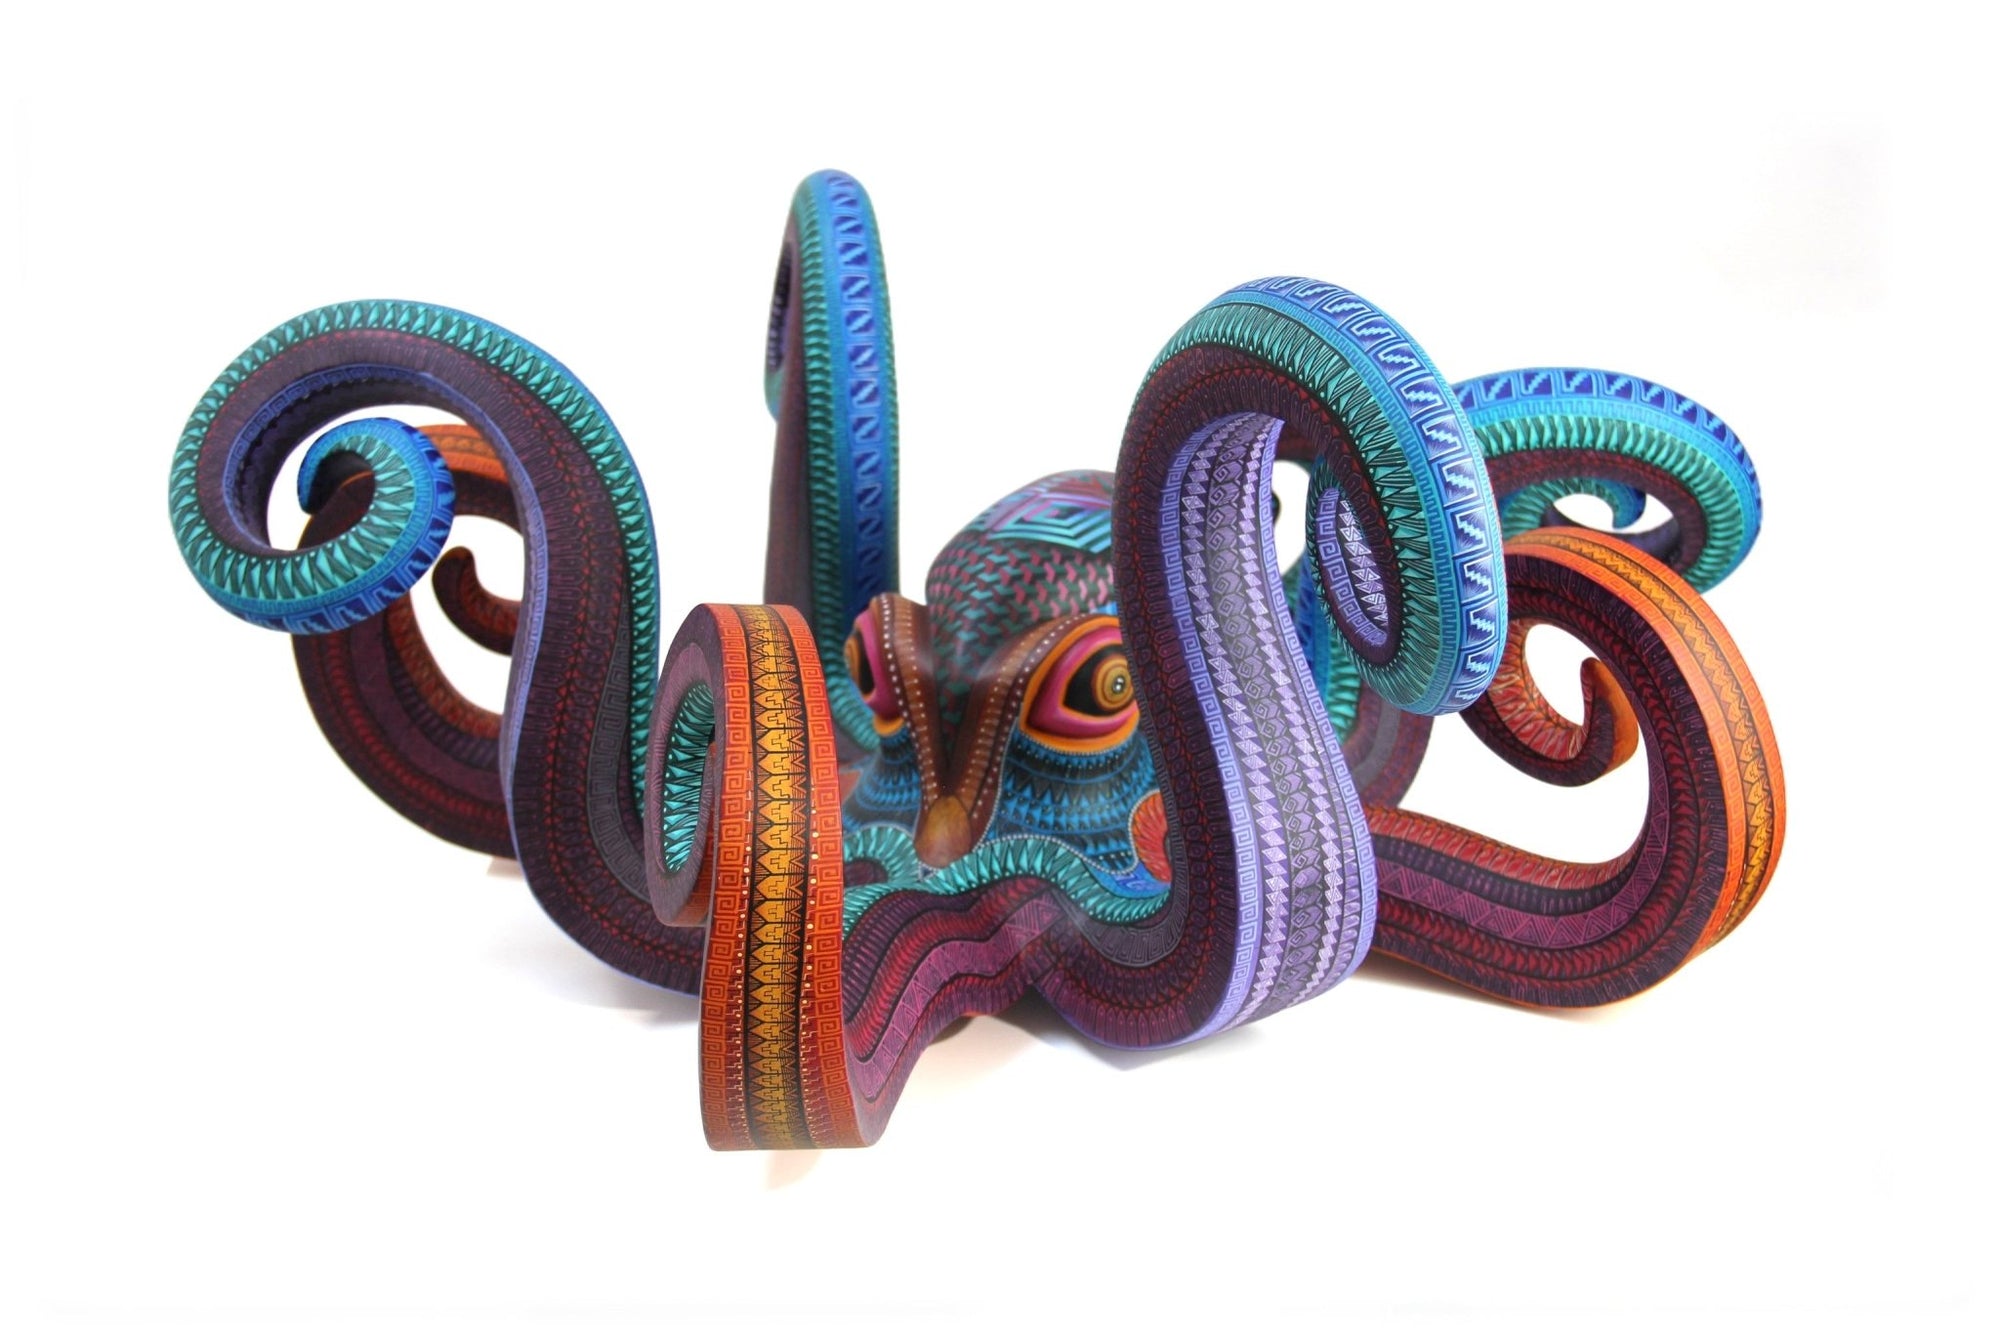 Oktopus Alebrije - Nisadó - Huichol Art - Marakame